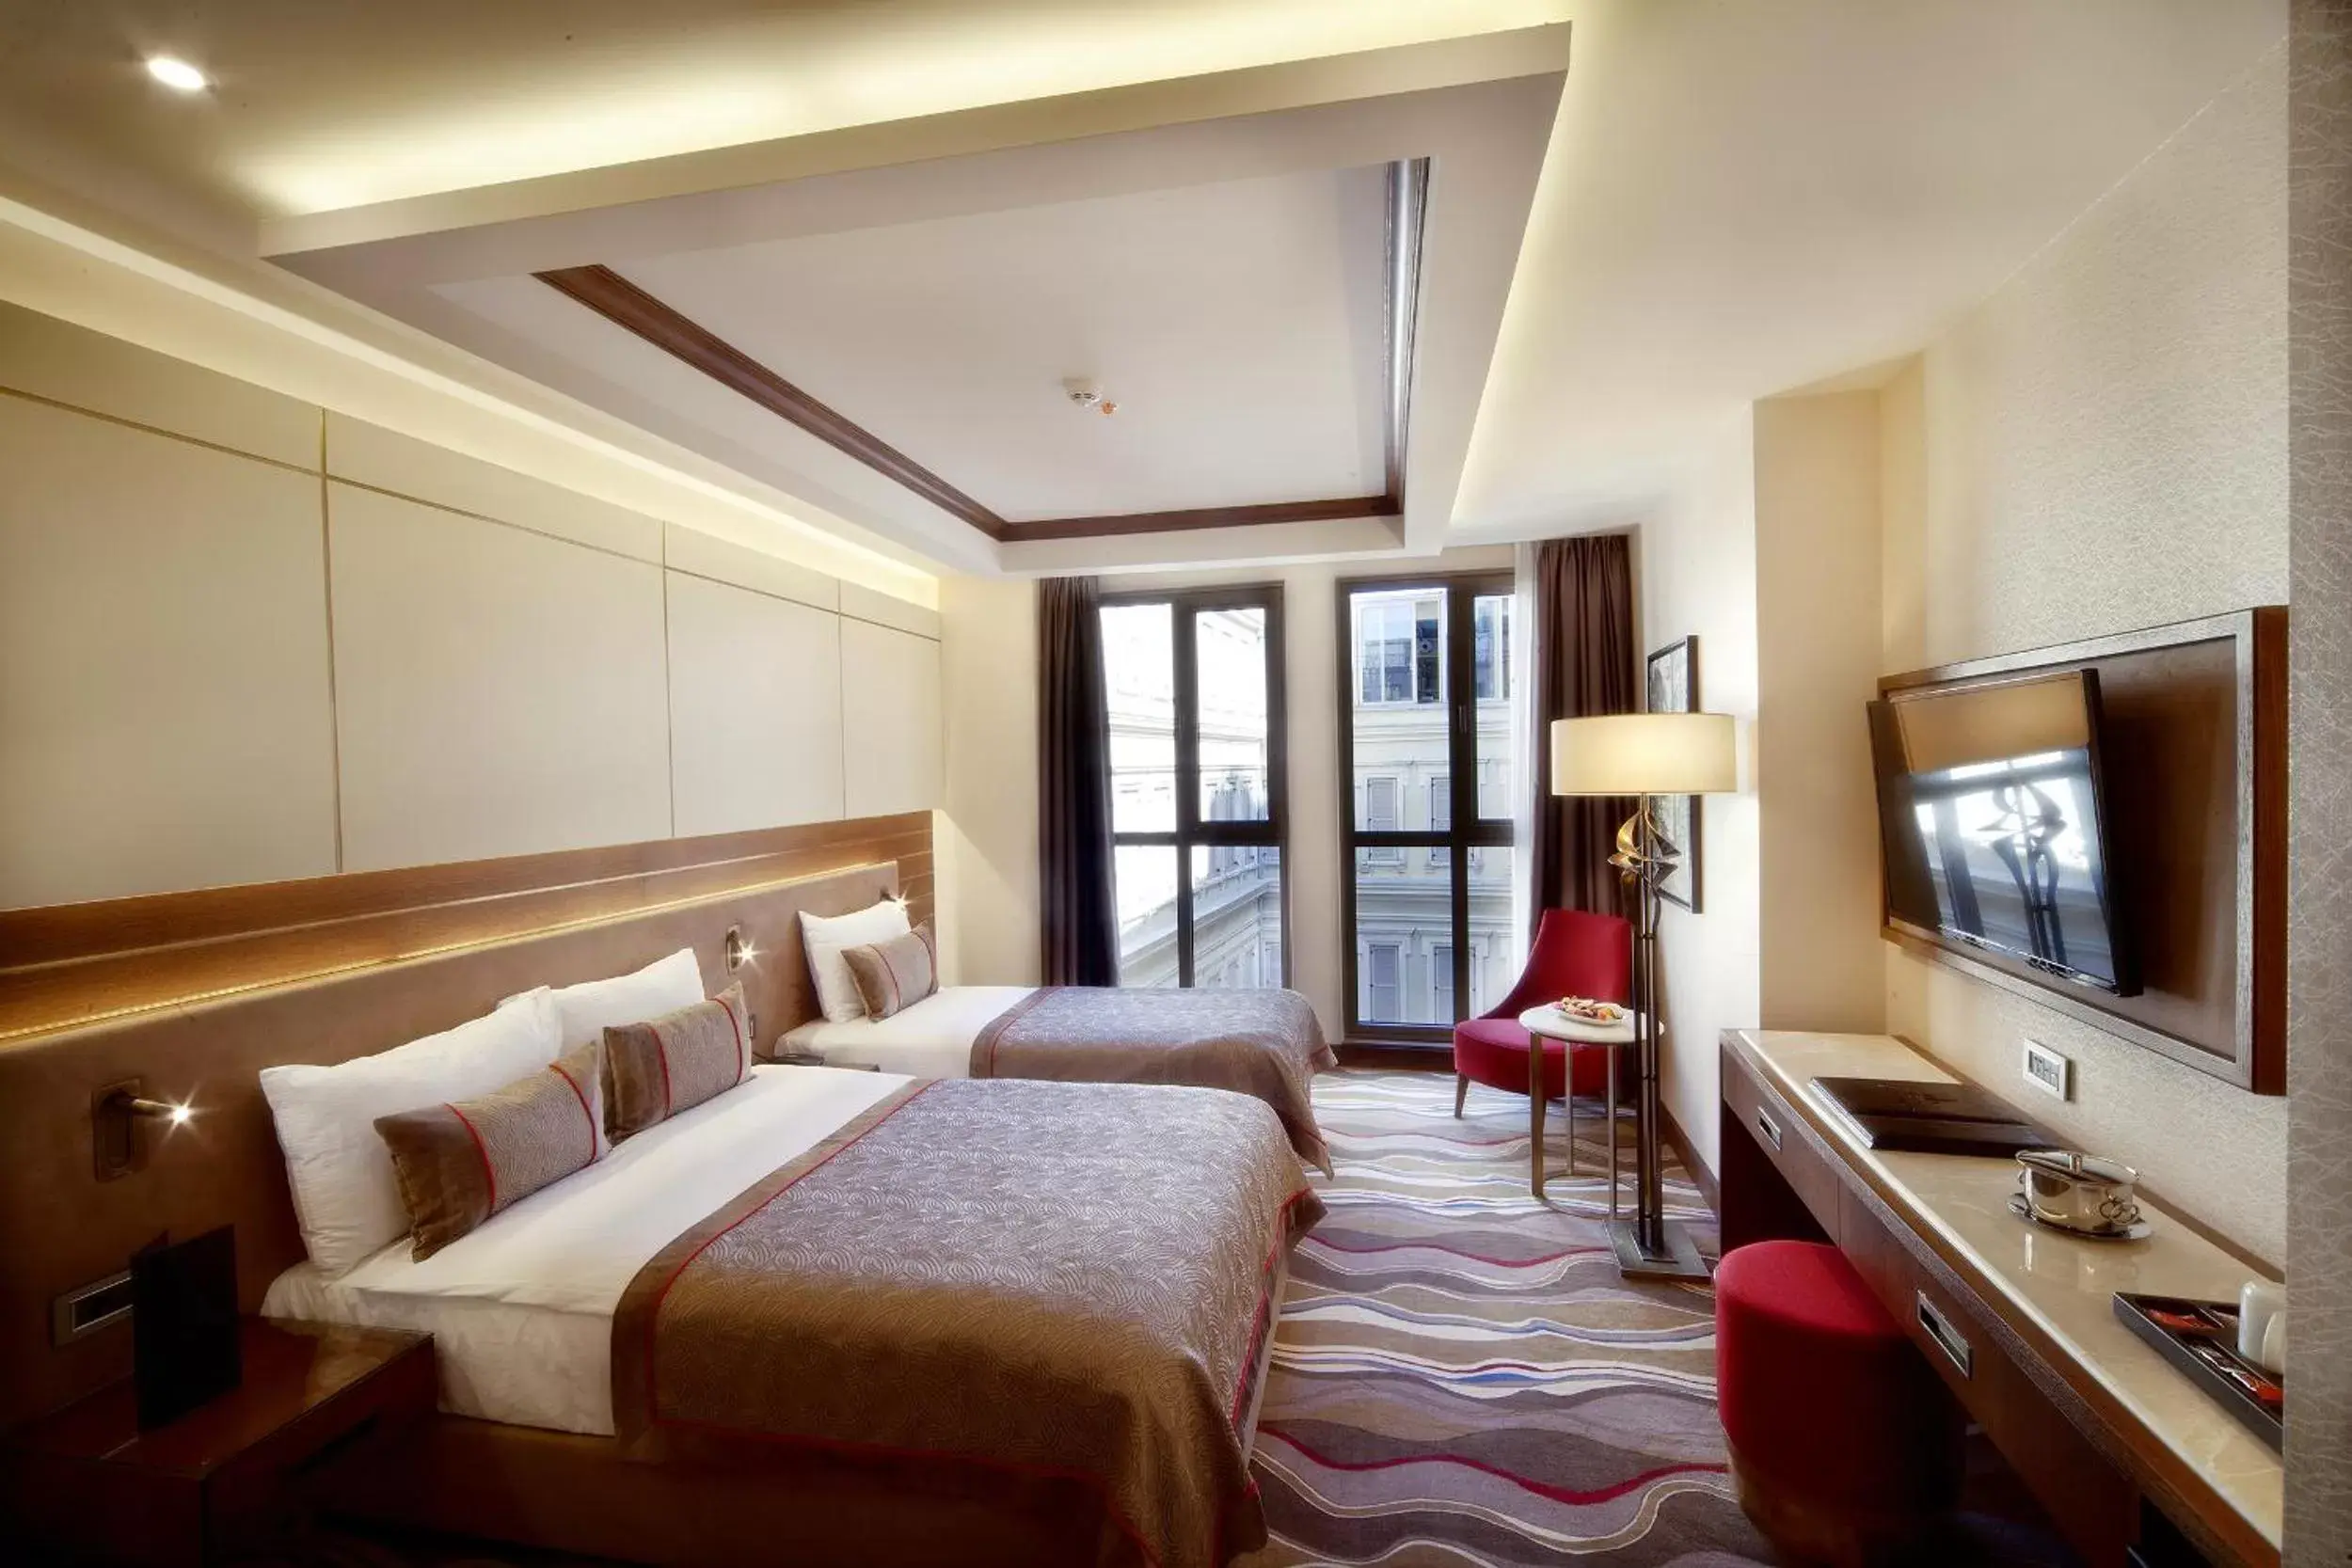 Photo of the whole room in Grand Hotel de Pera